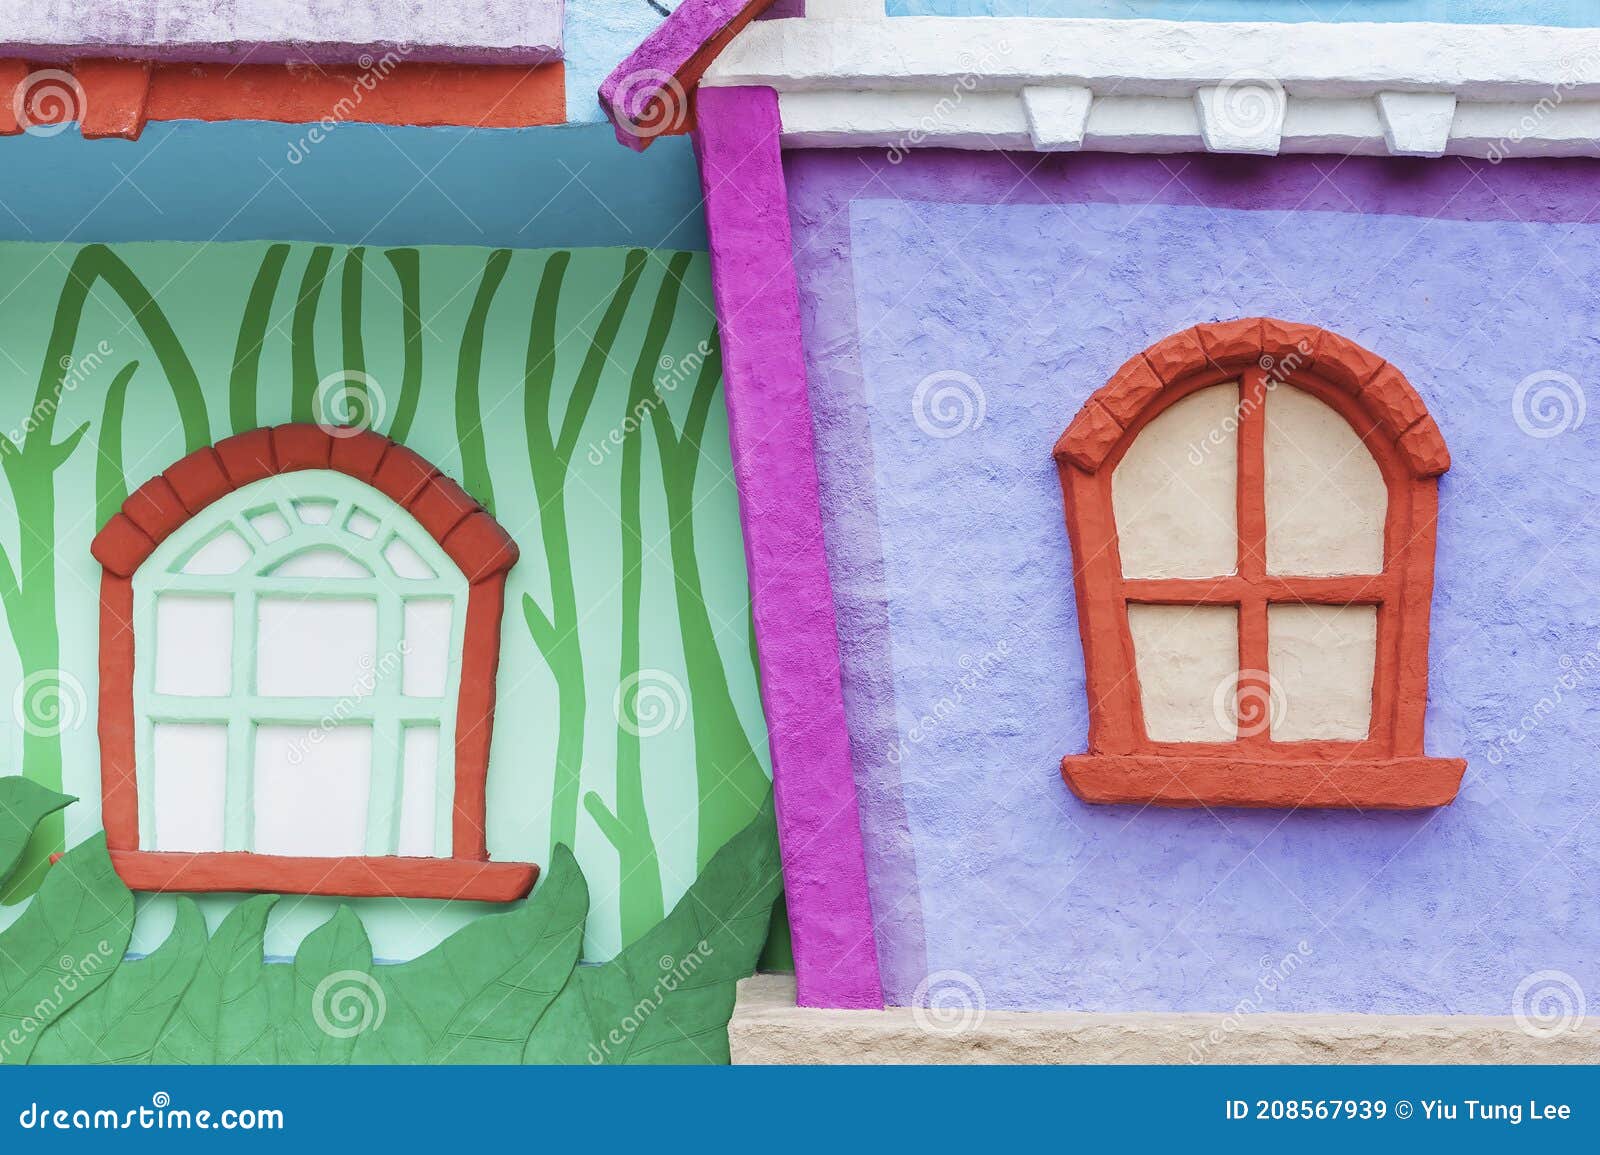 Ventana De Colorida Casa De Dibujos Animados Imagen de archivo - Imagen de  aldea, historieta: 208567939